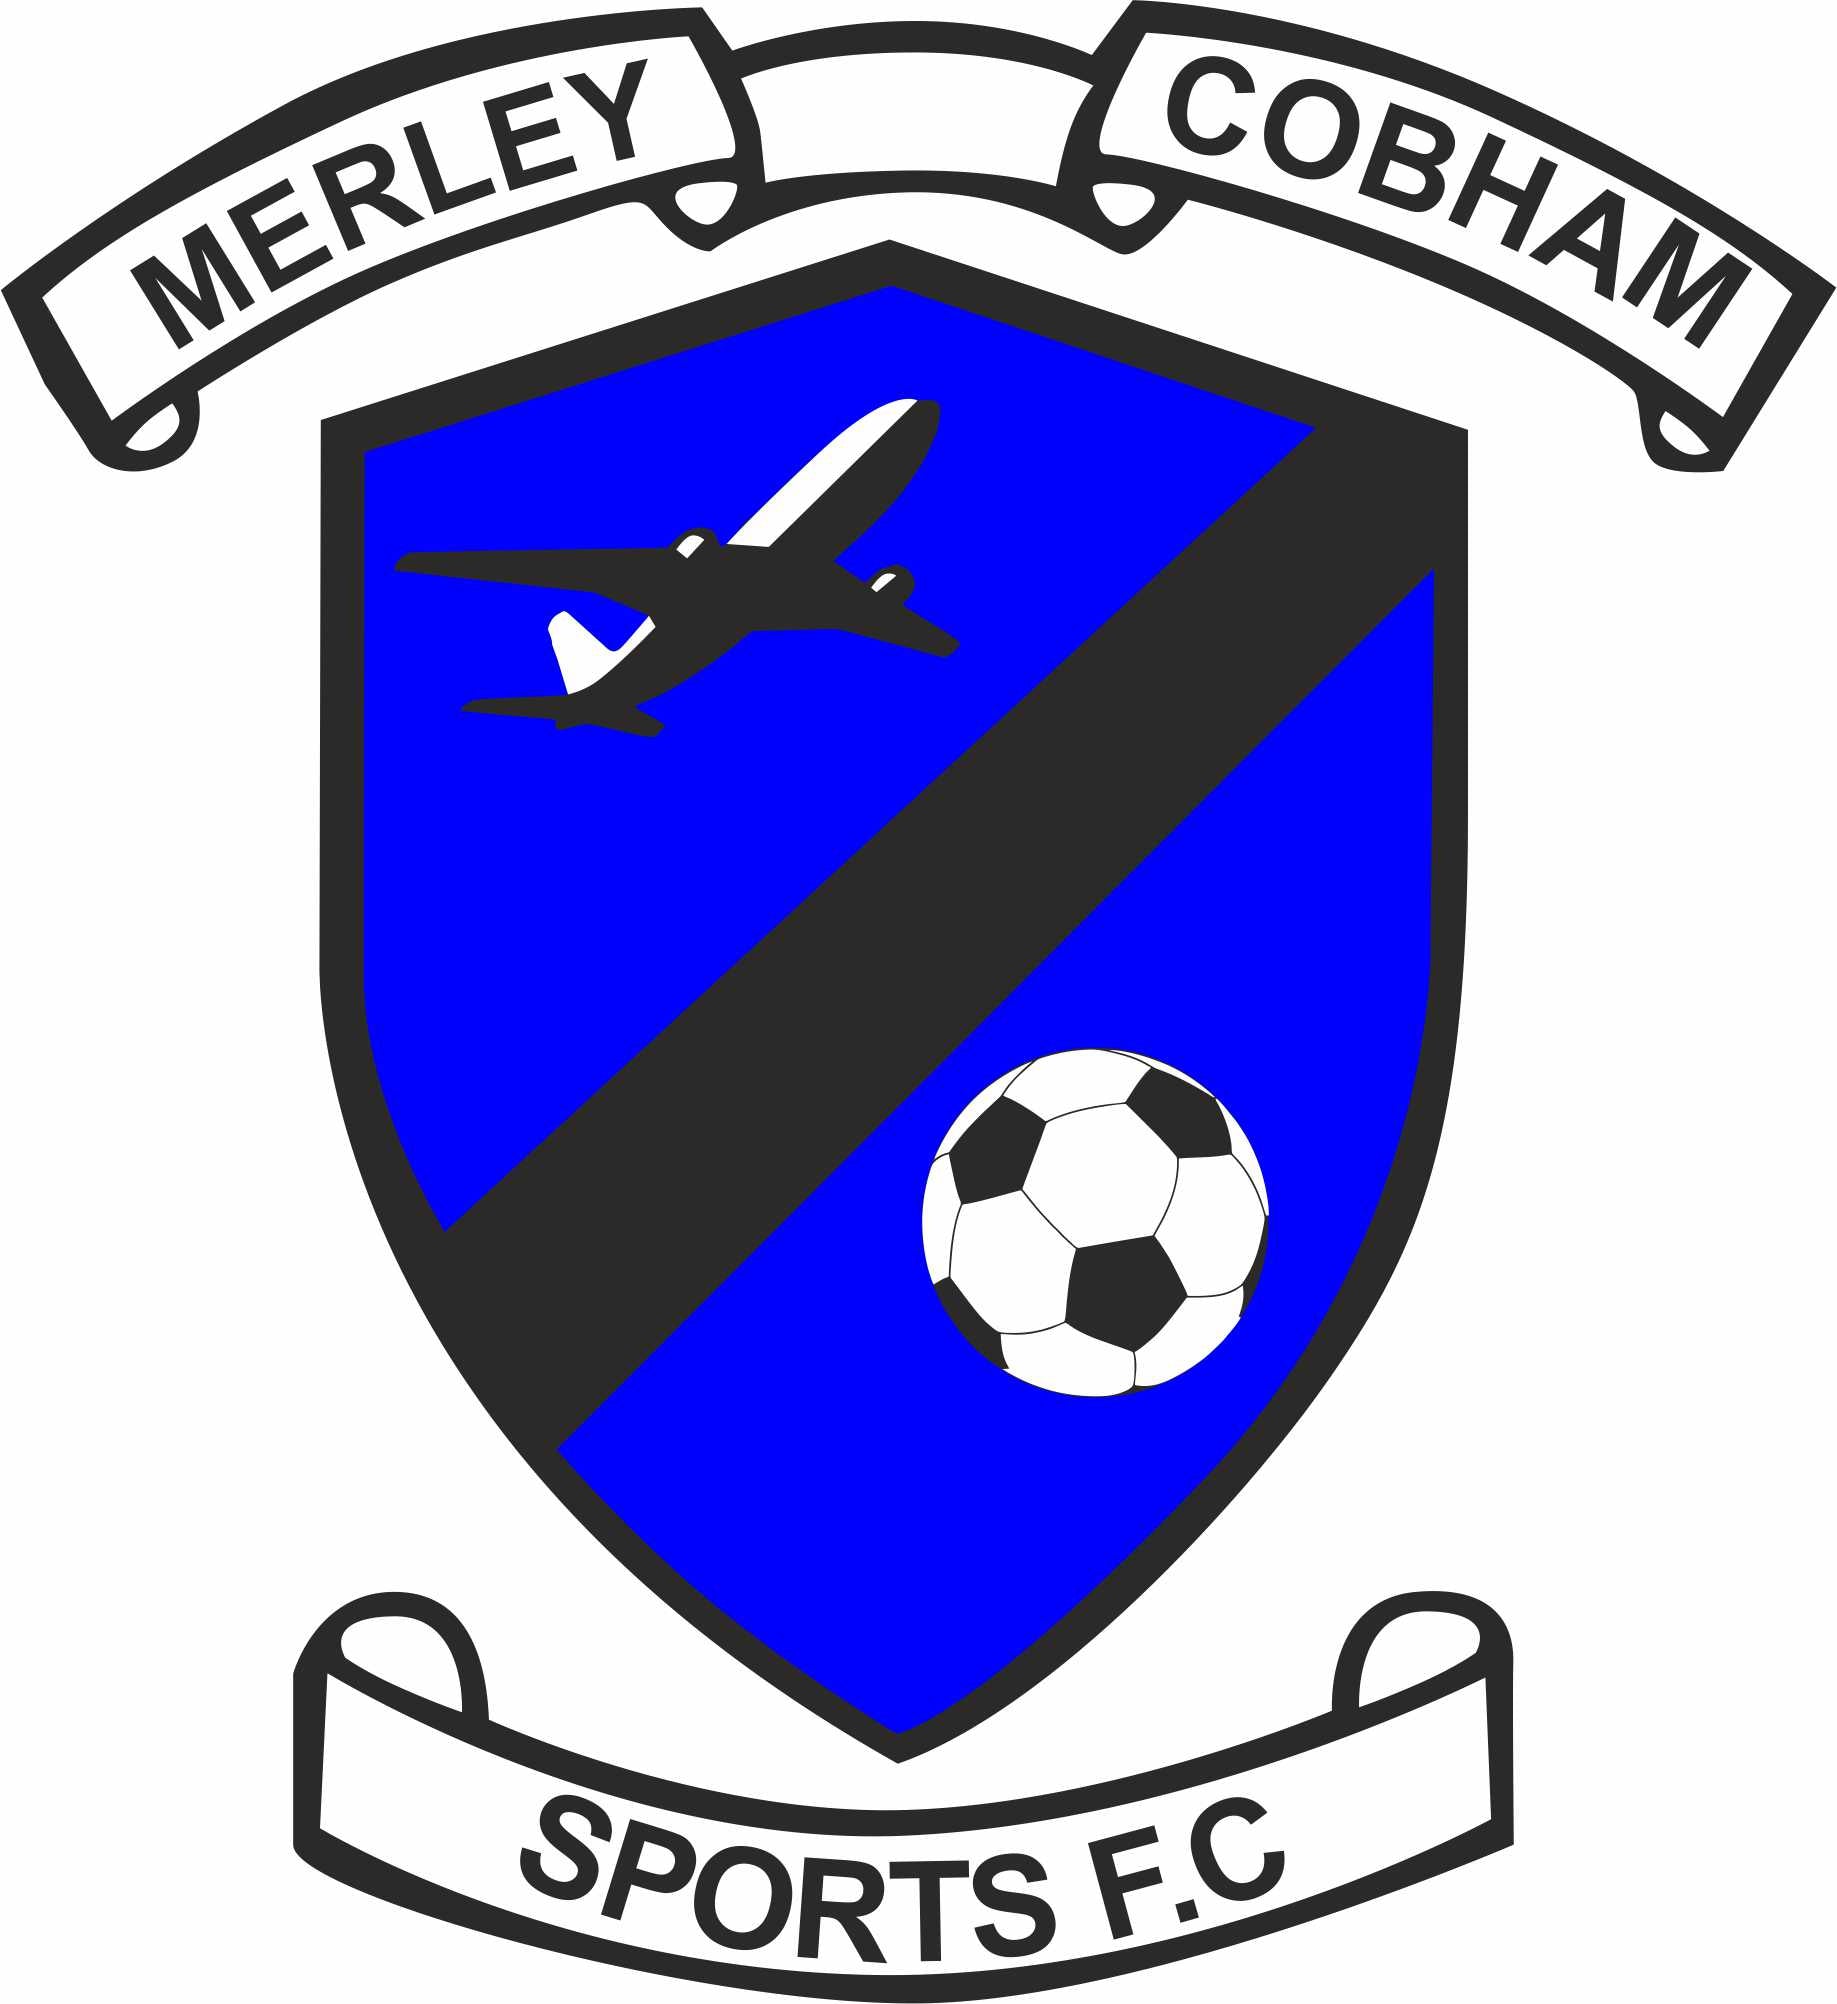 Merley Cobham